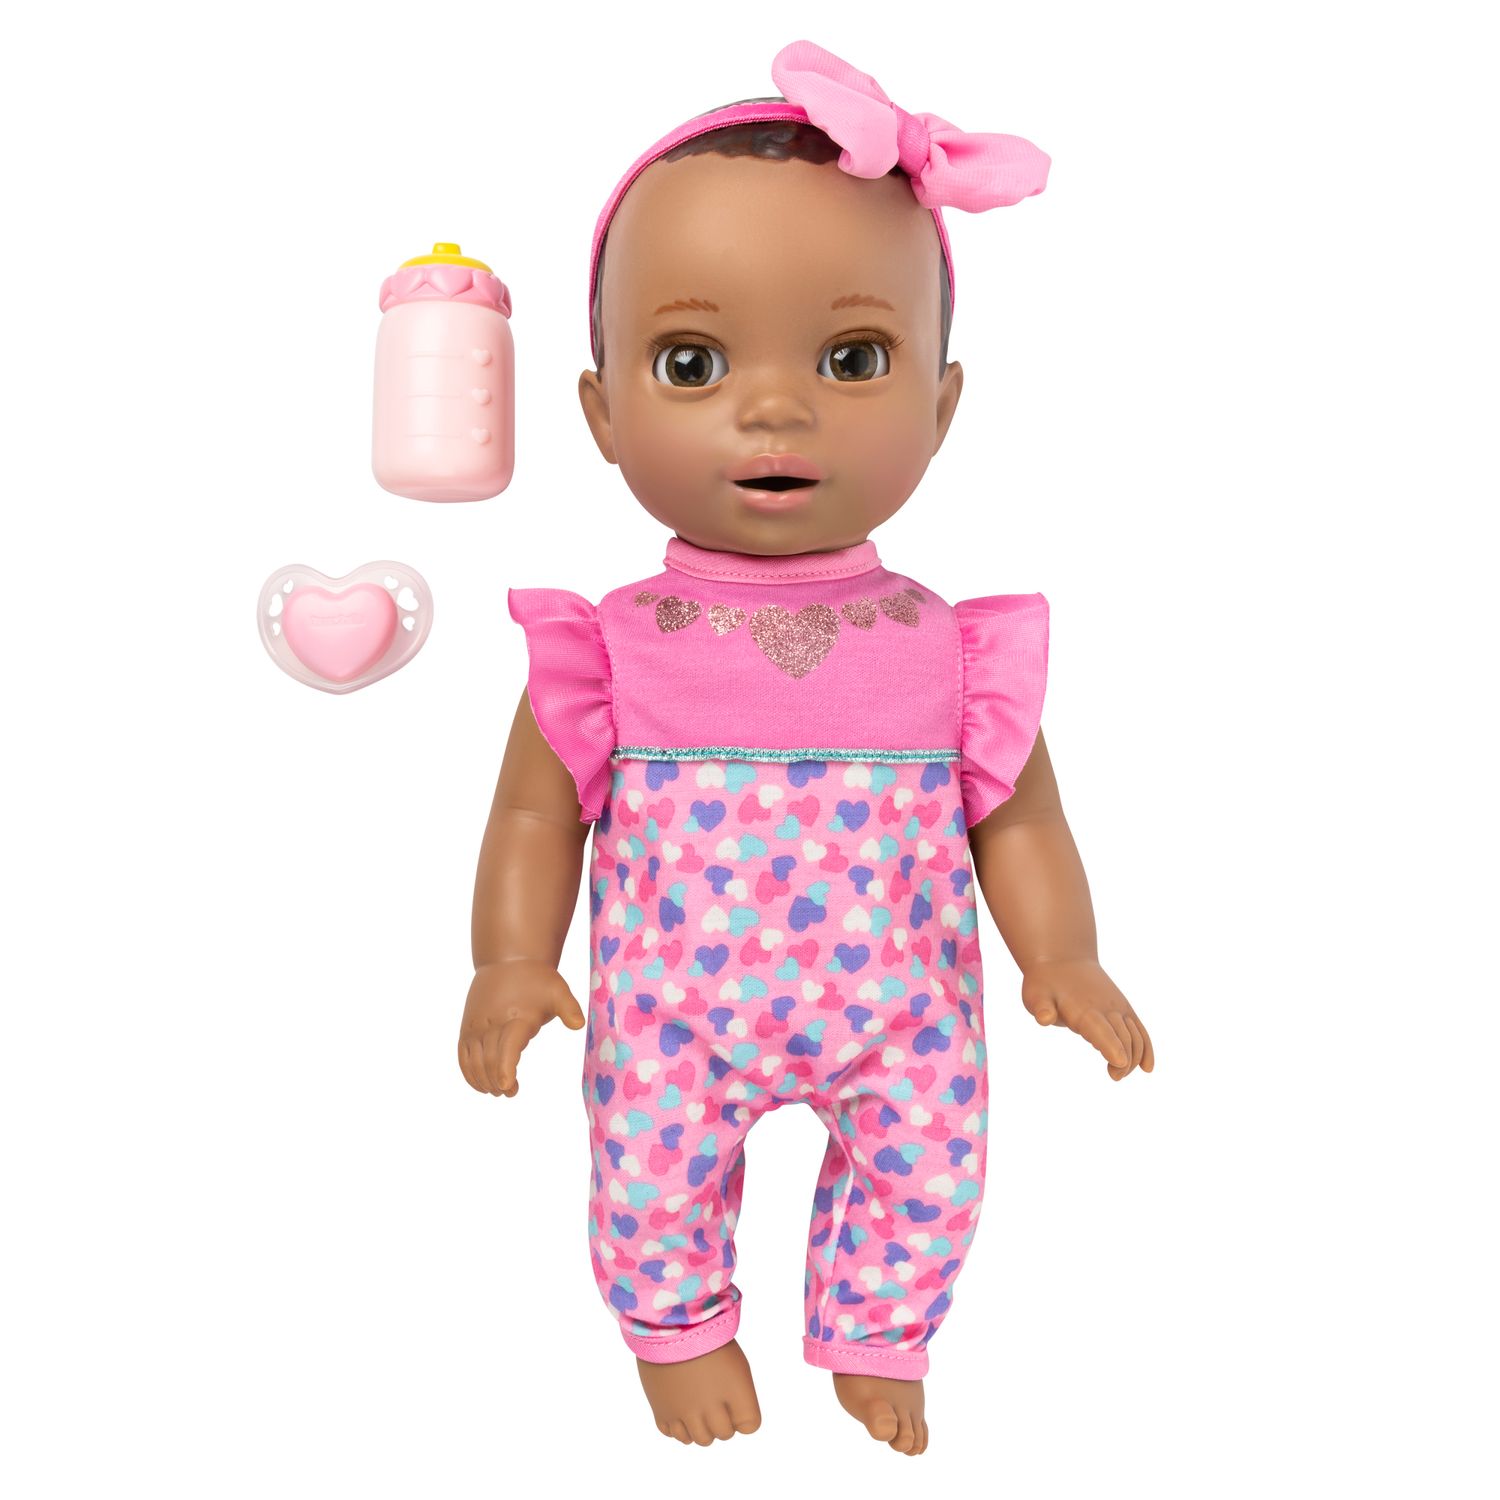 a newborn baby doll